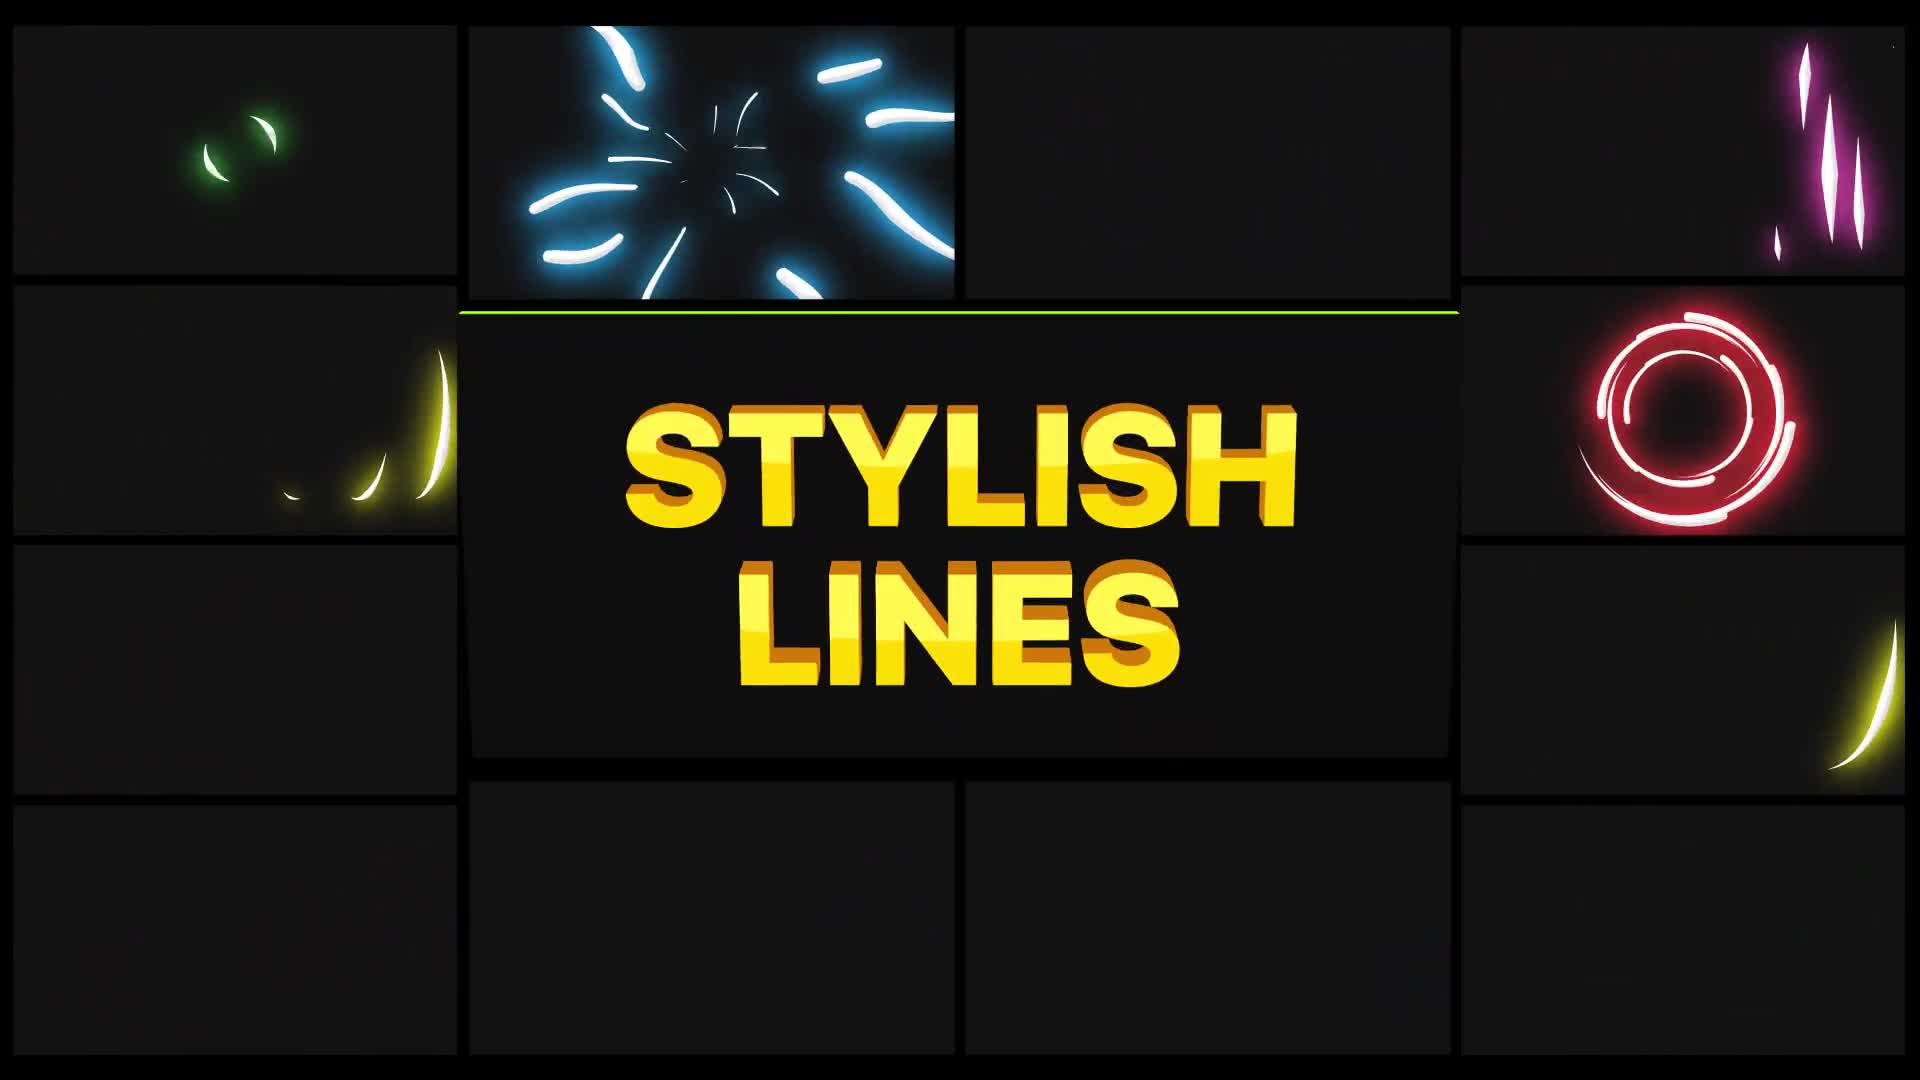 Stylish Lines | DaVinci Resolve Videohive 38230027 DaVinci Resolve Image 1